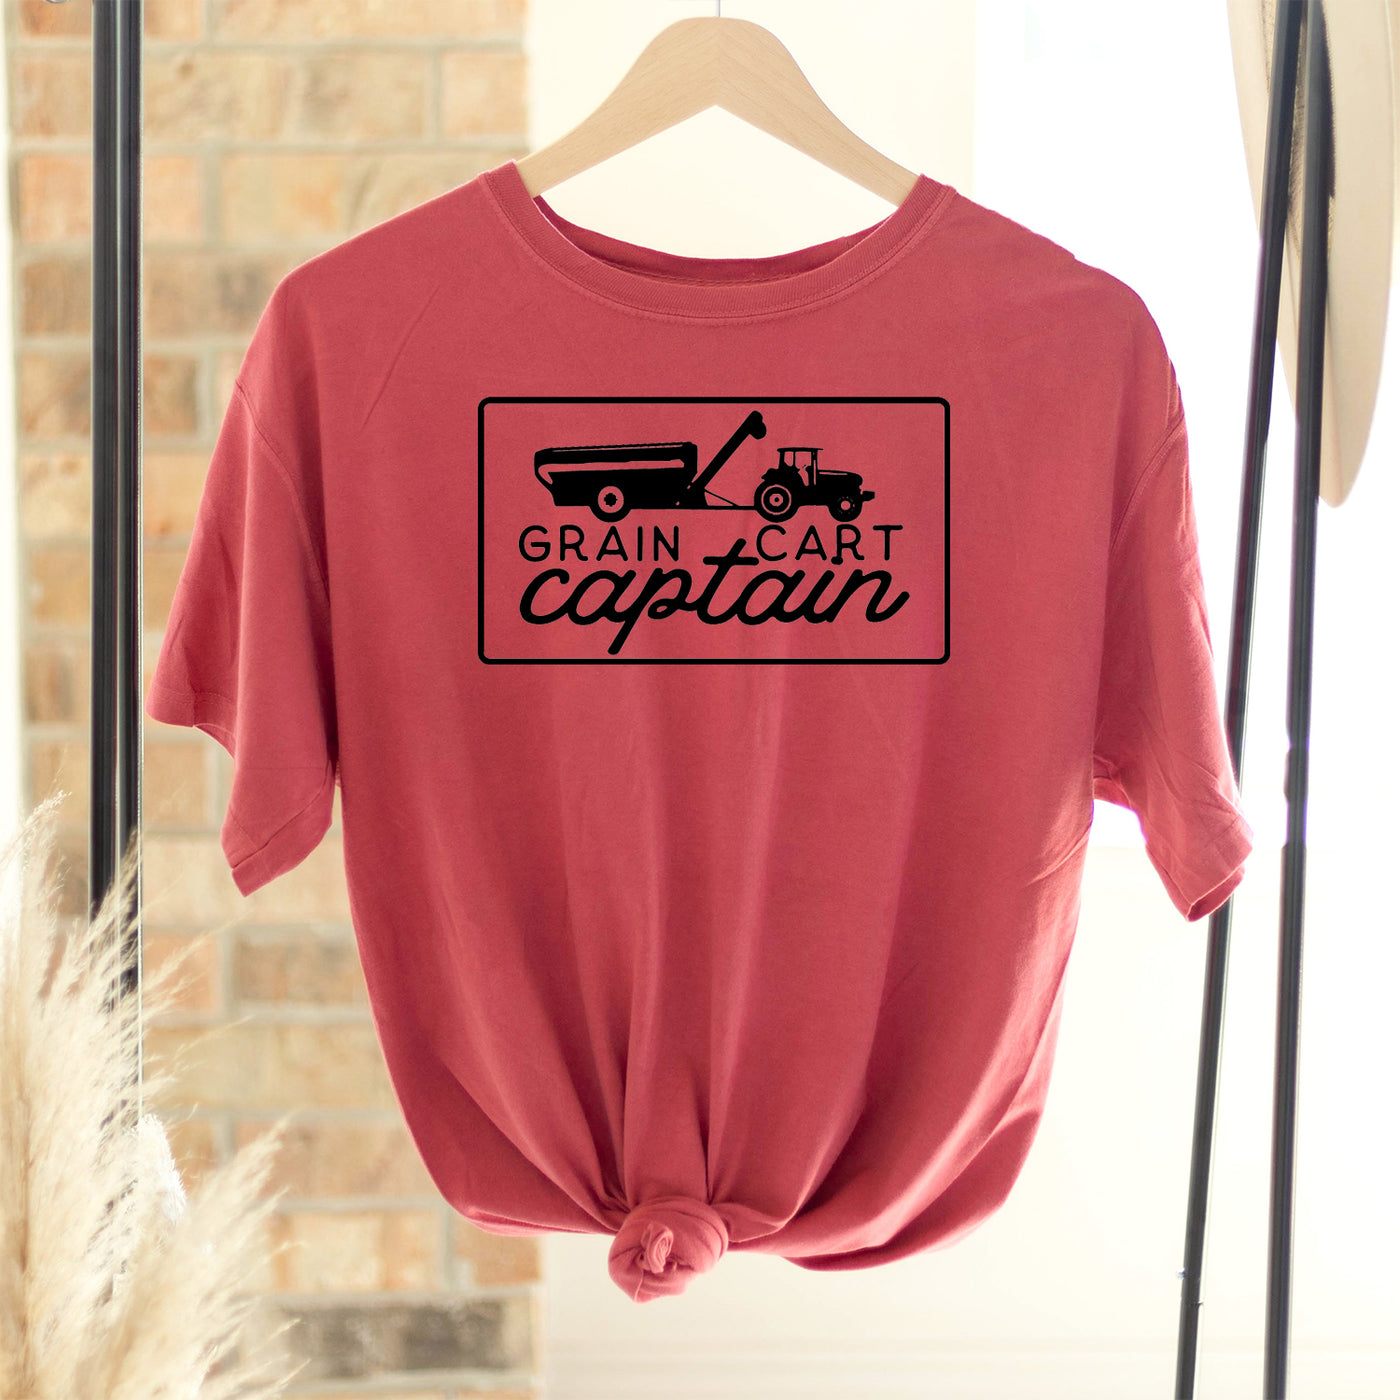 Grain Cart Captain ComfortWash/ComfortColor T-Shirt (S-4XL) - Multiple Colors!